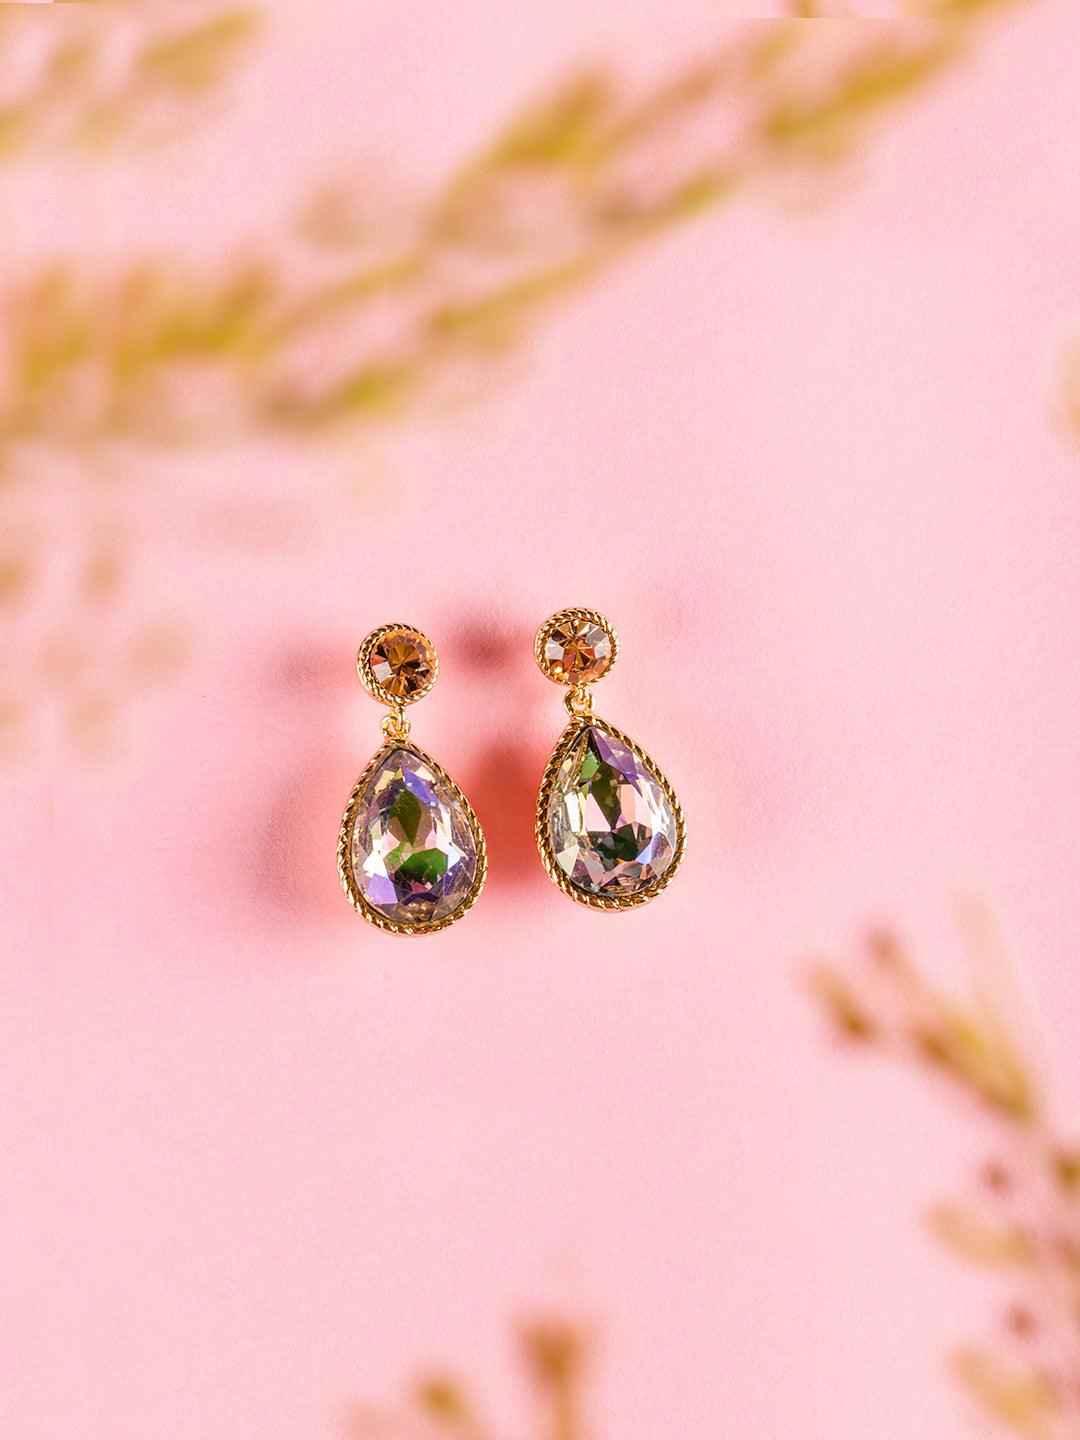 Ishhaara Sapphire Drop Earrings - Peach